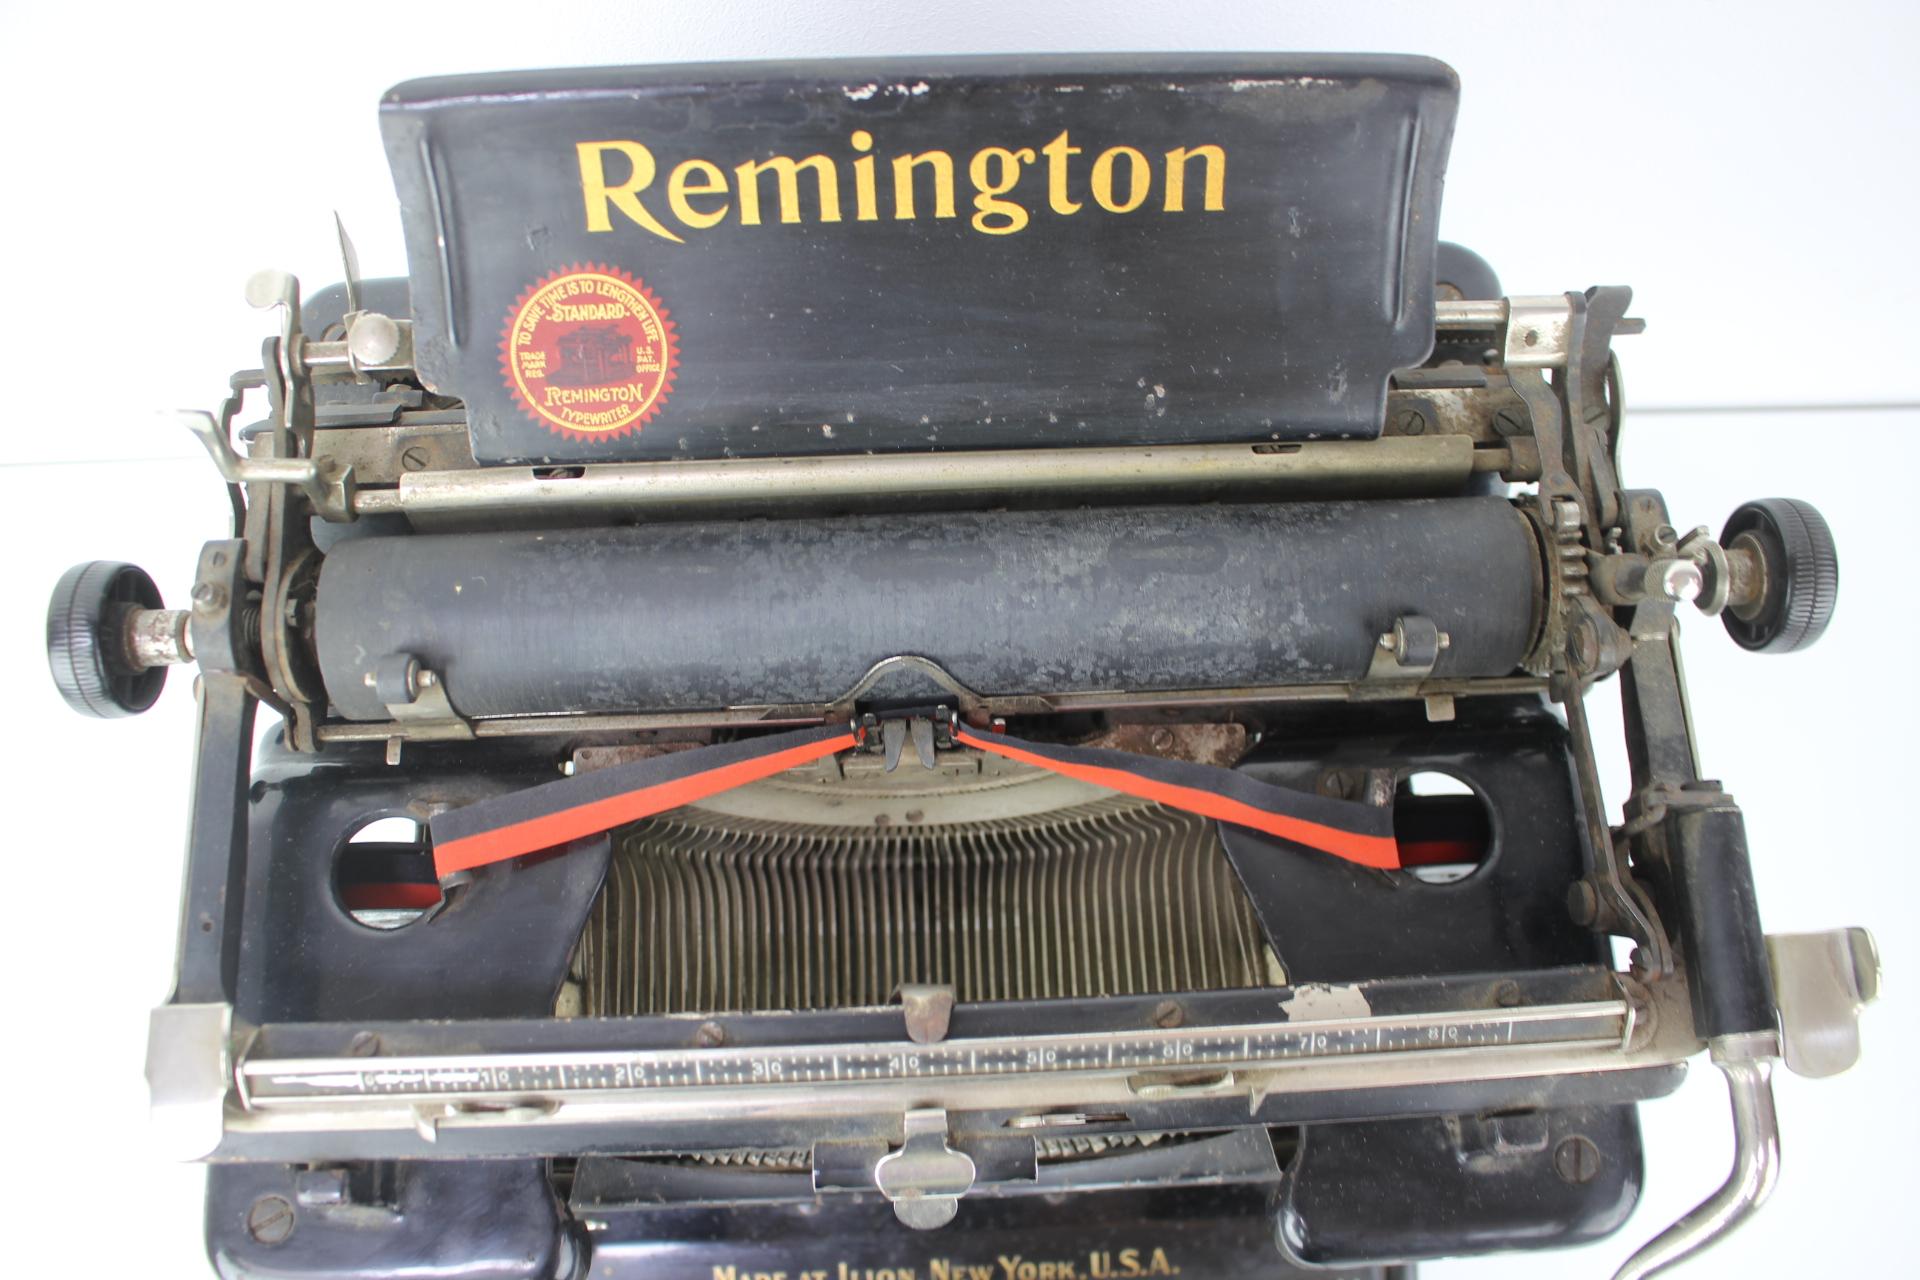 1920s typewriter